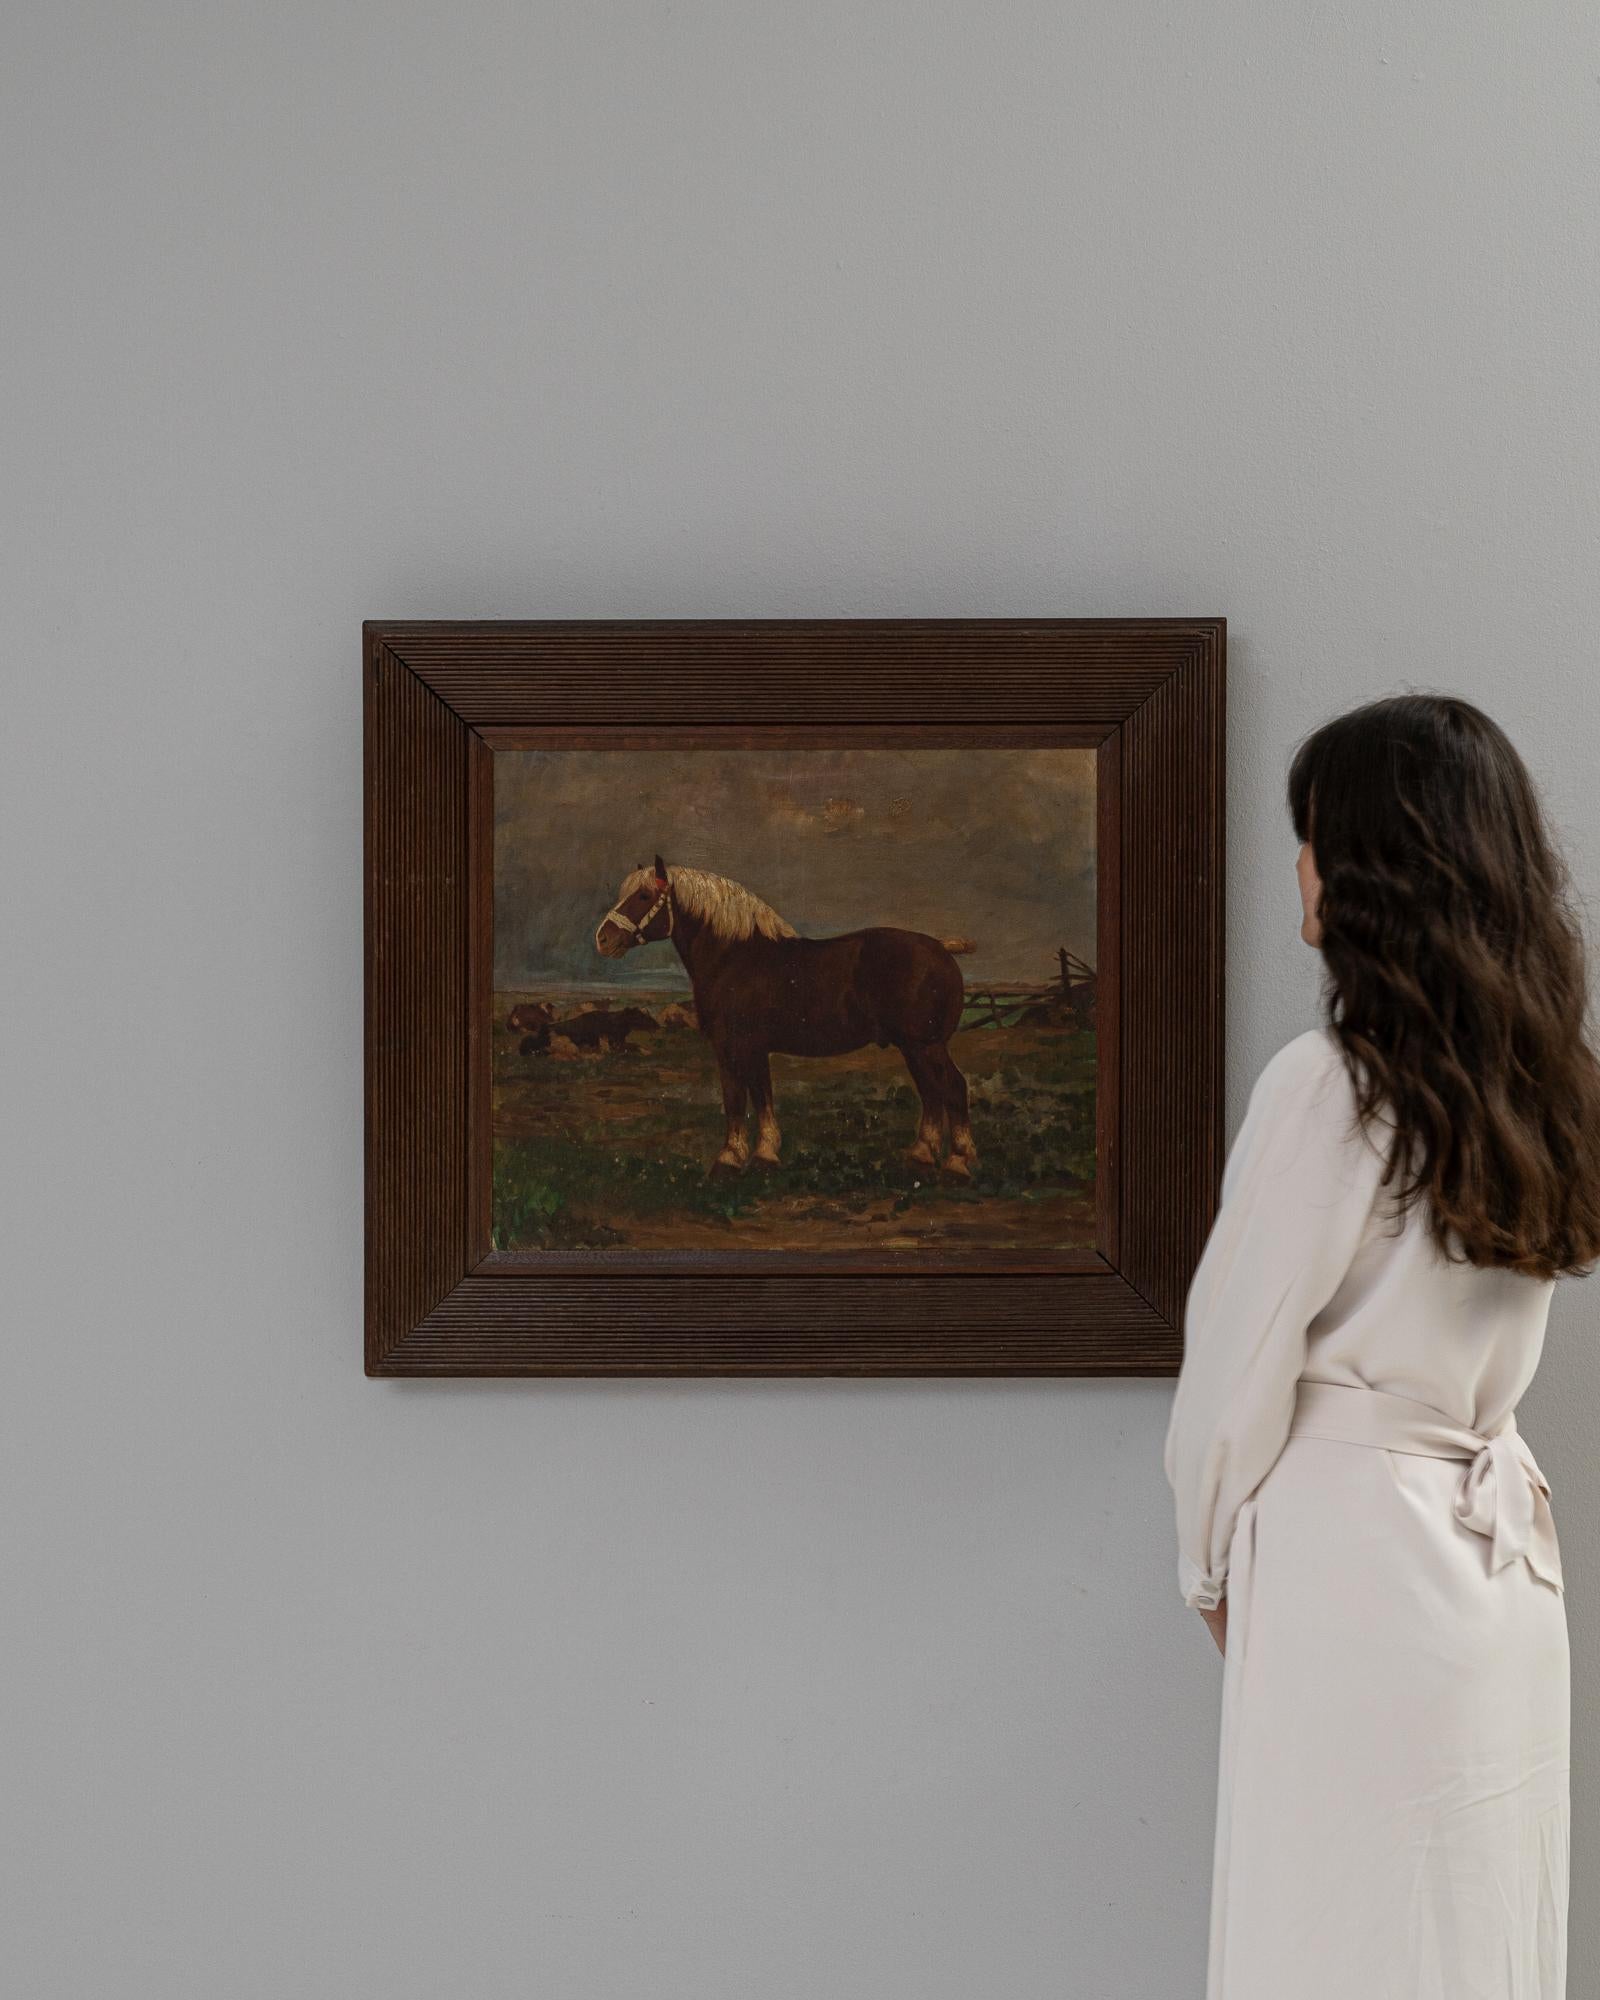 Cette peinture belge du XXe siècle présente un cheval majestueux dans sa splendeur pastorale, une œuvre qui respire la force tranquille et la beauté de l'animal. Le cheval, plein d'assurance, se tient au centre d'un paysage rural qui évoque